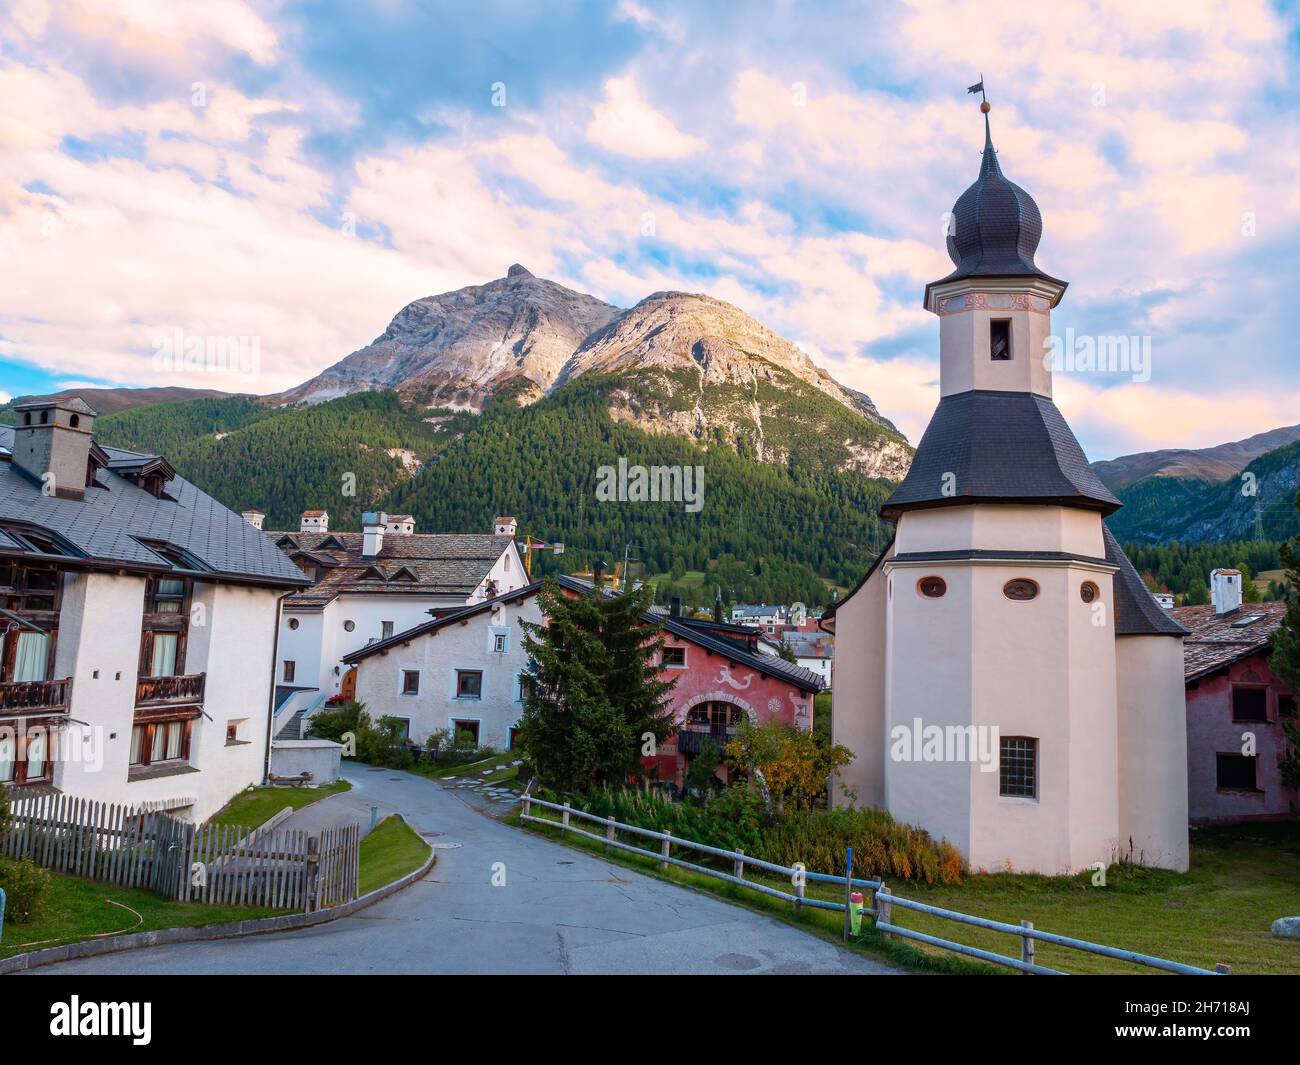 La Punt, Schweiz - 29. September 2021: La Punt ist eine Gemeinde des Bezirks Maloja des Kantons Graubünden in der Schweiz. Stockfoto